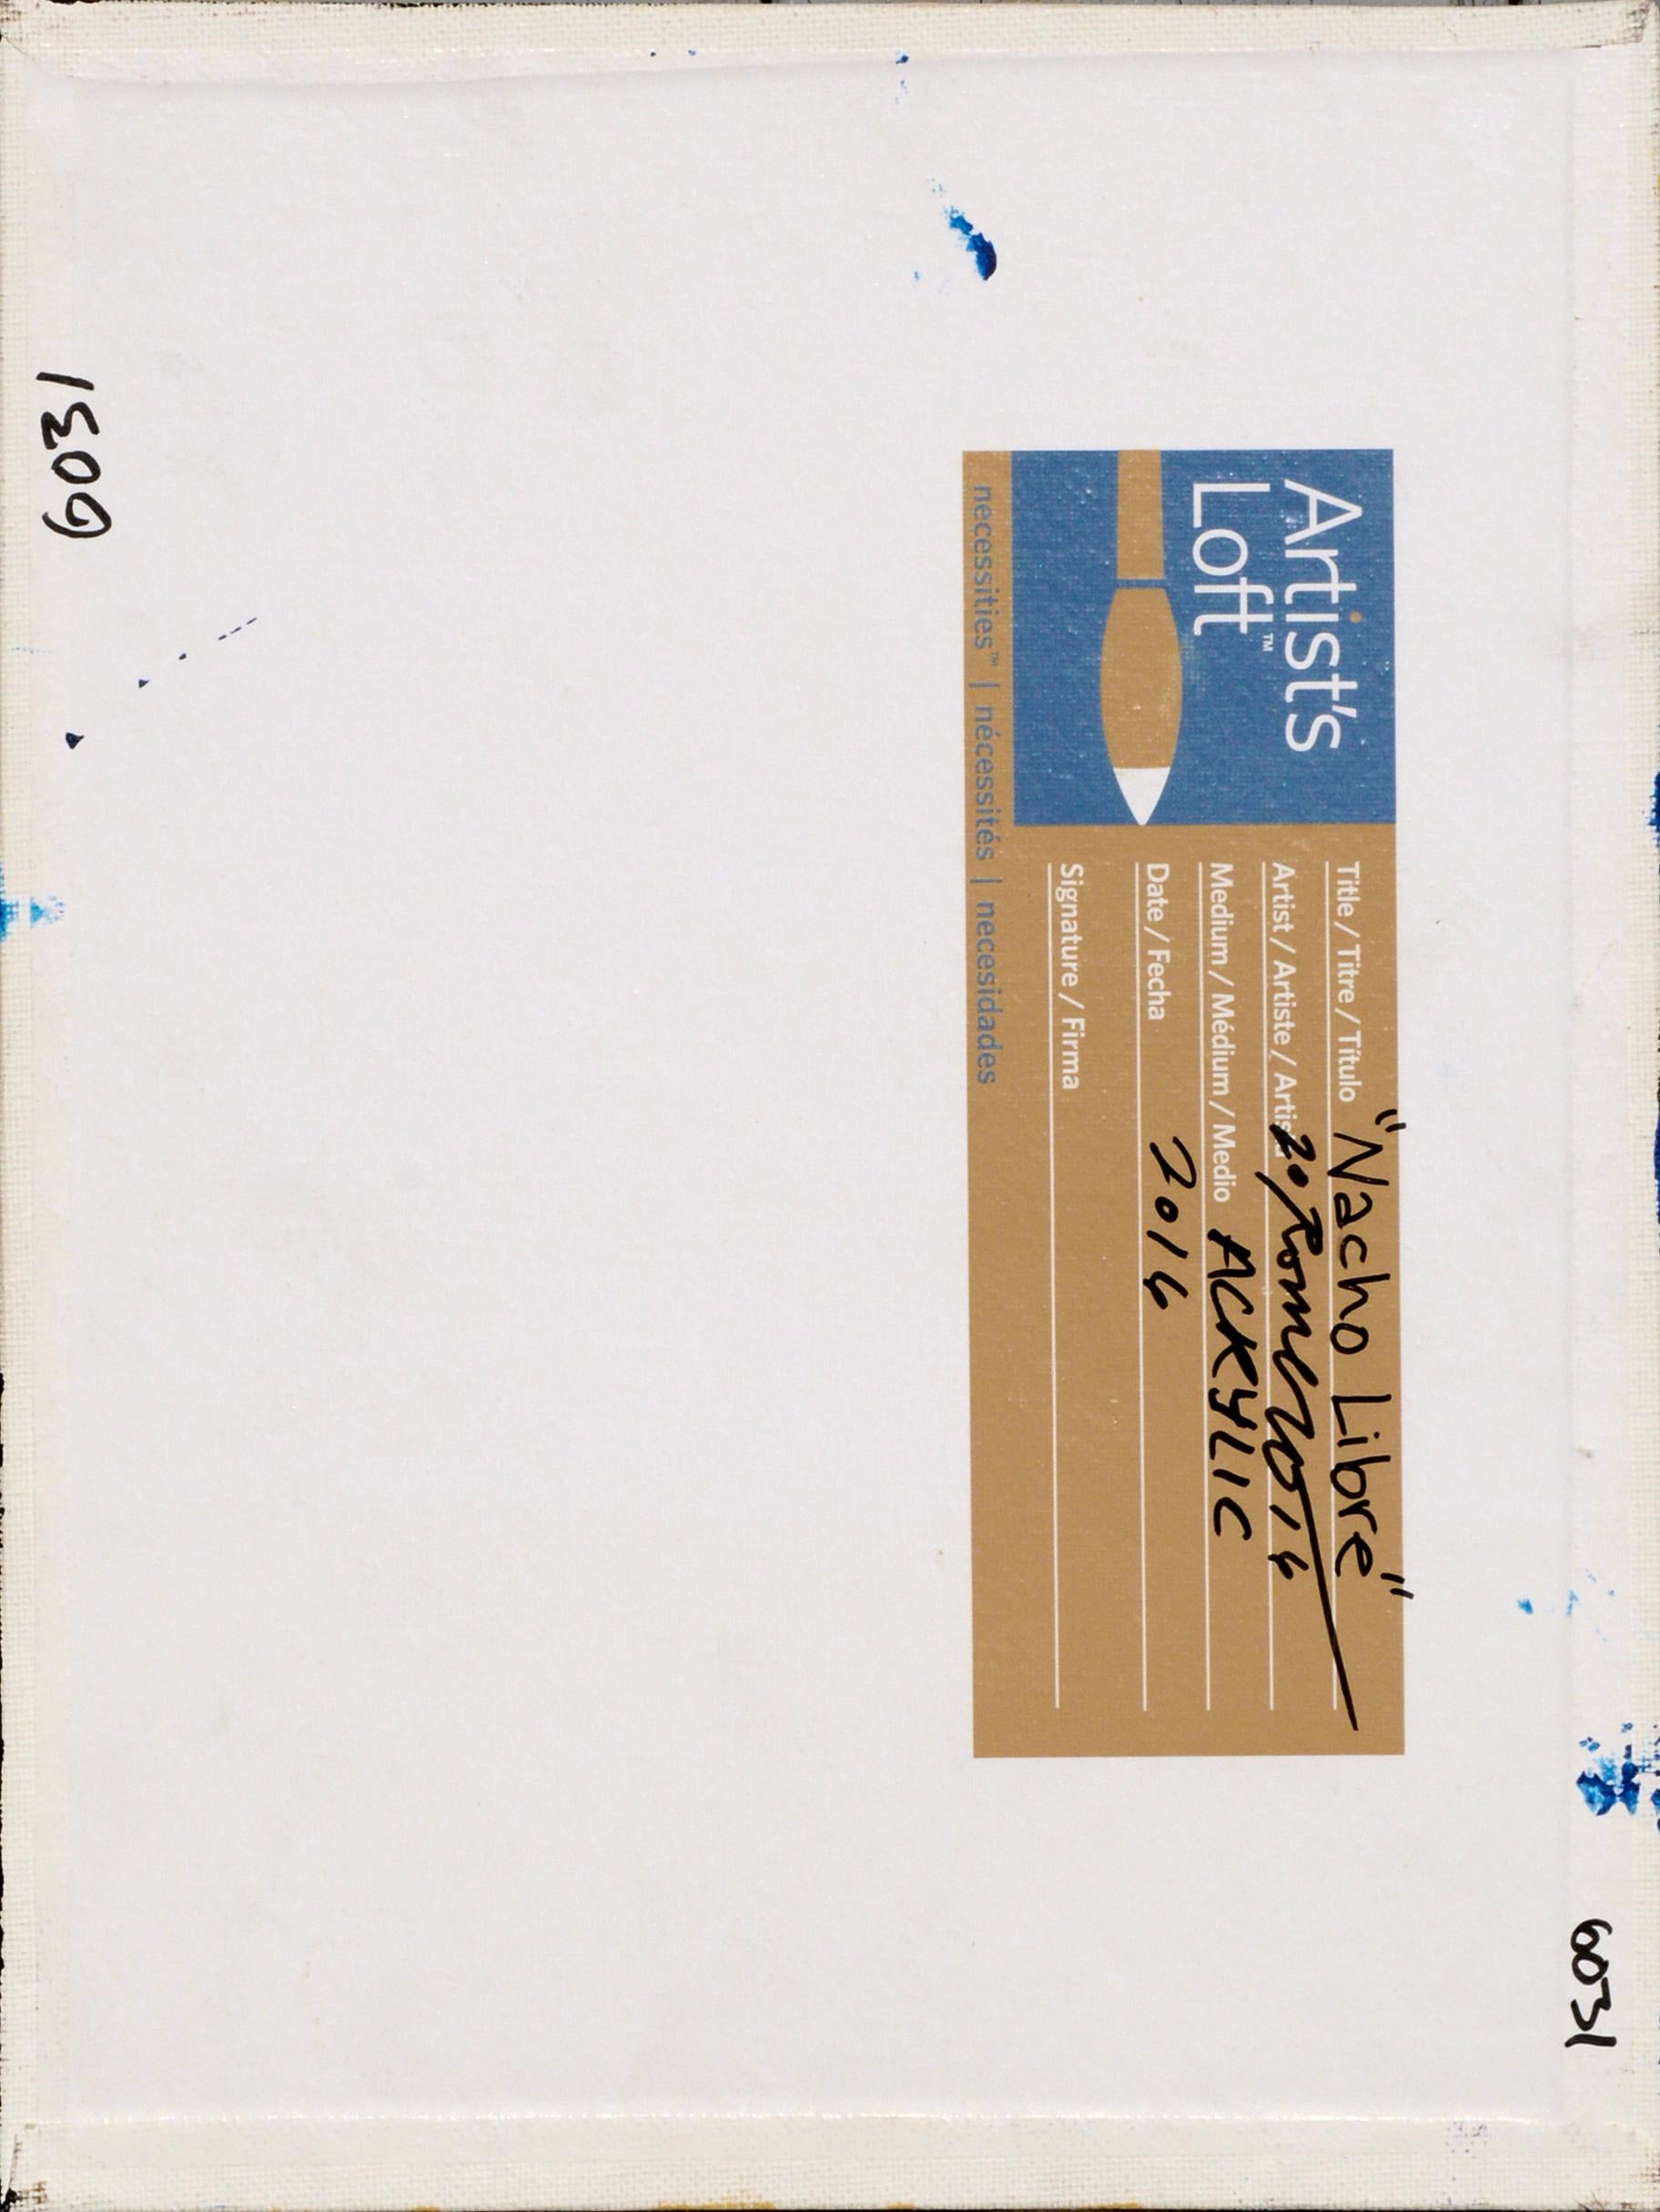 Composition abstraite contemporaine vibrante à petite échelle avec du bleu, de l'or et du rose par l'artiste expressionniste abstrait Frank Thomas Romero (américain, né en 1985) de la région de Monterey Bay, en Californie. Signé et daté 